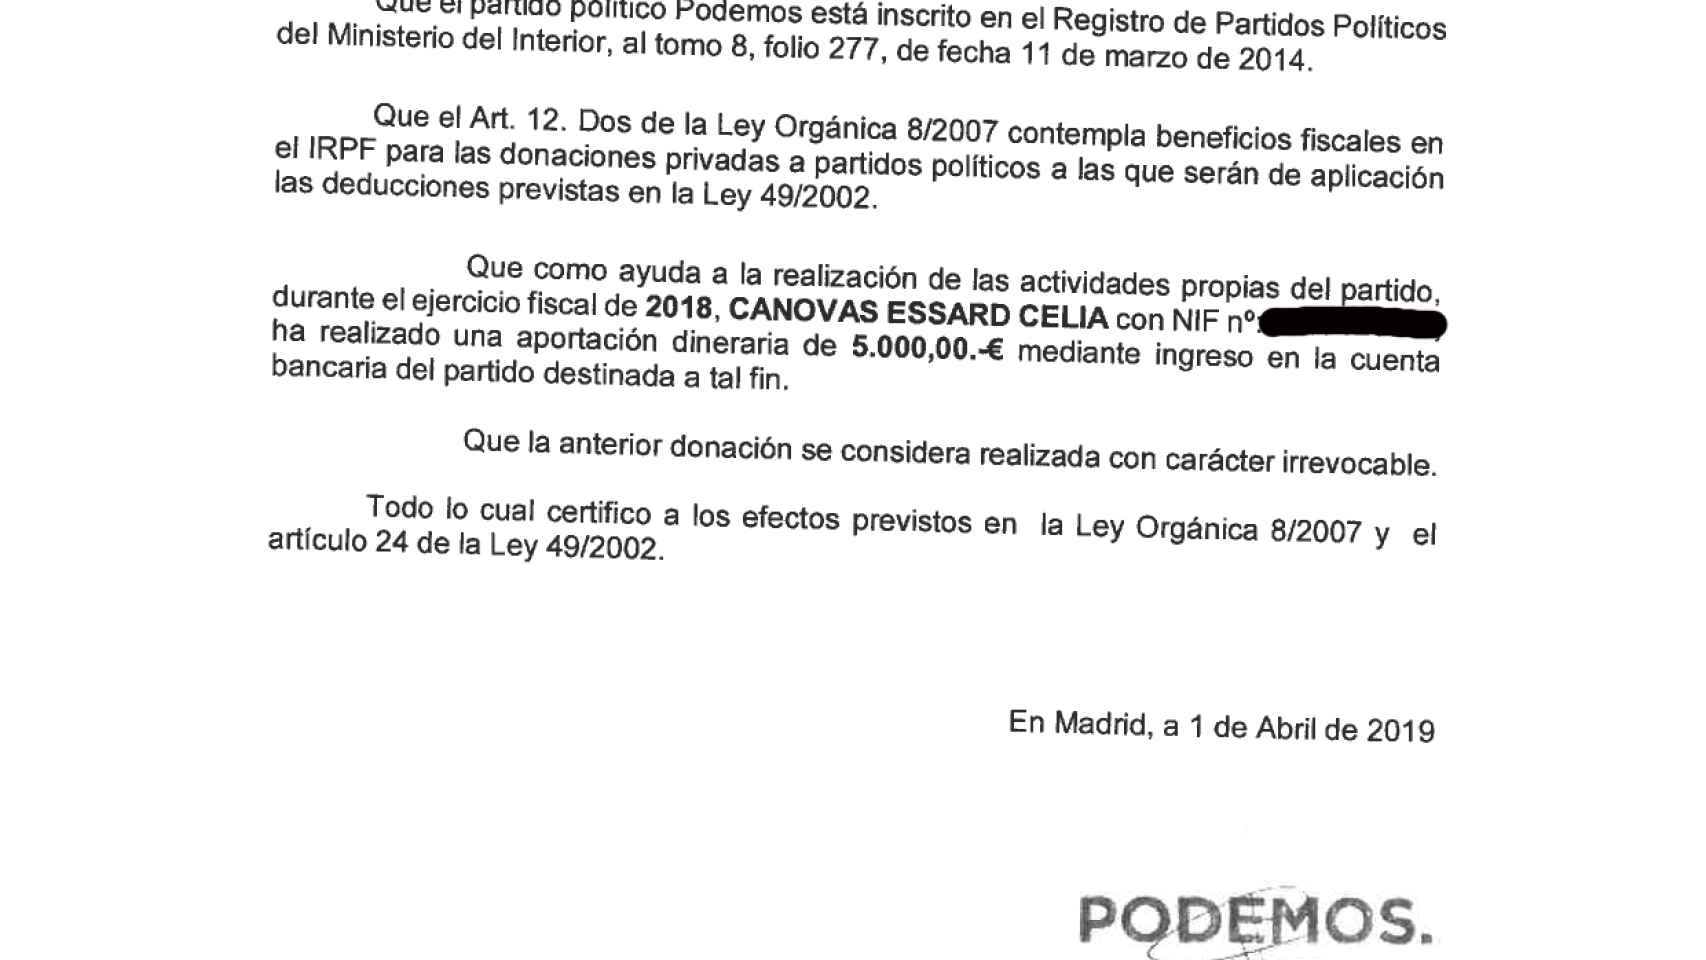 Certificado emitido por Podemos a la exsenadora Celia Cánovas.